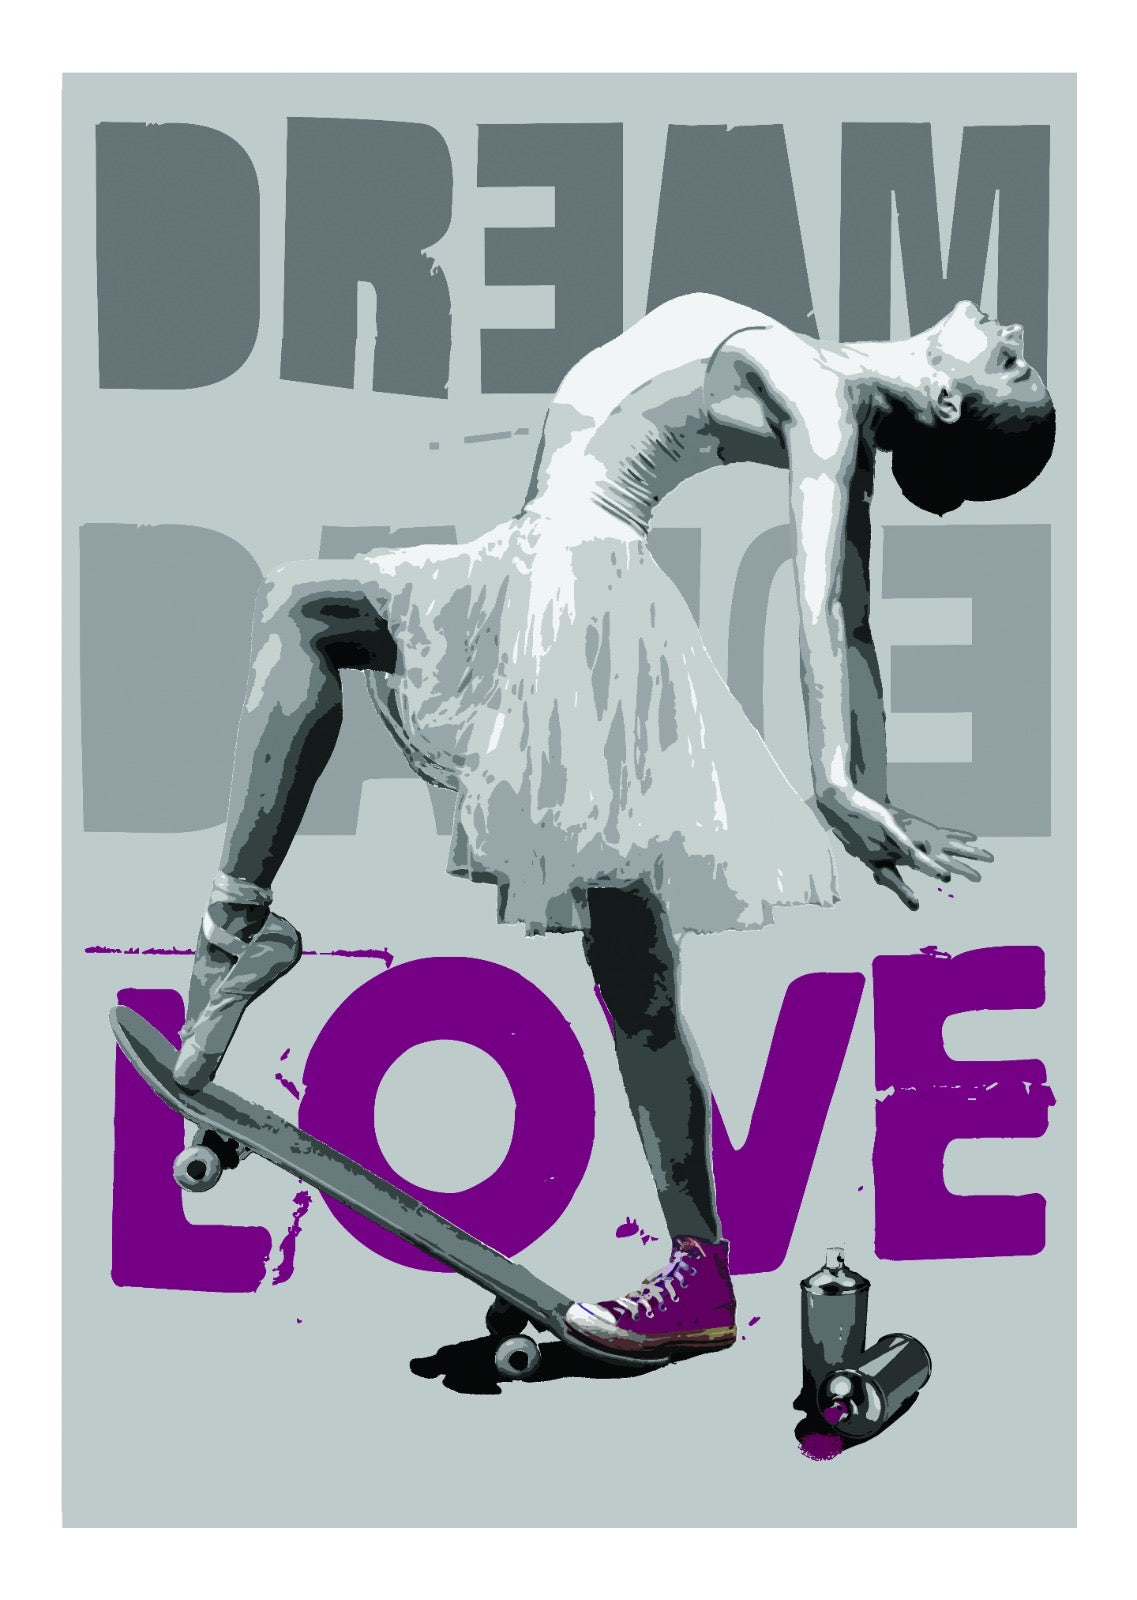 Don't choose. Stampa giclée stampa su carta 320 gsm edizione limitata rspray e stencil su tela rappresentante una ballerina sullo skate, sullo sfondo le parole DREAM (sogno) e LOVE (amore)  | Cd Studio d'Arte